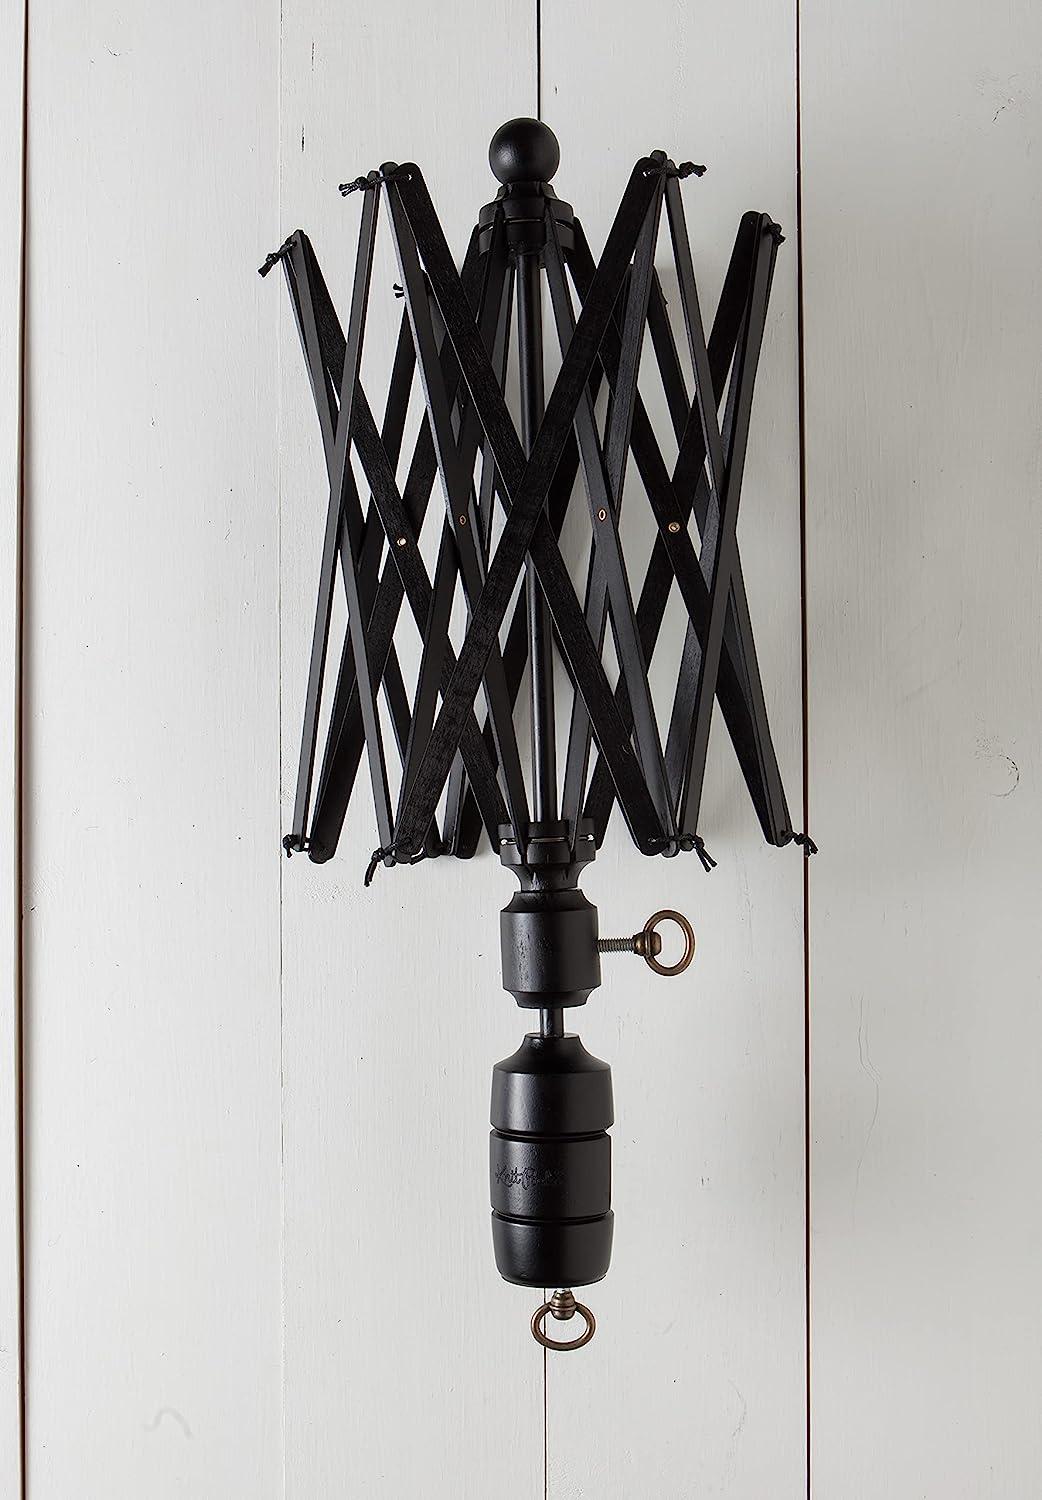 Umbrella Table Top Yarn Swift | Yarn Winder Notion Tools | Crafts Arts Yarn  Bowl Tools